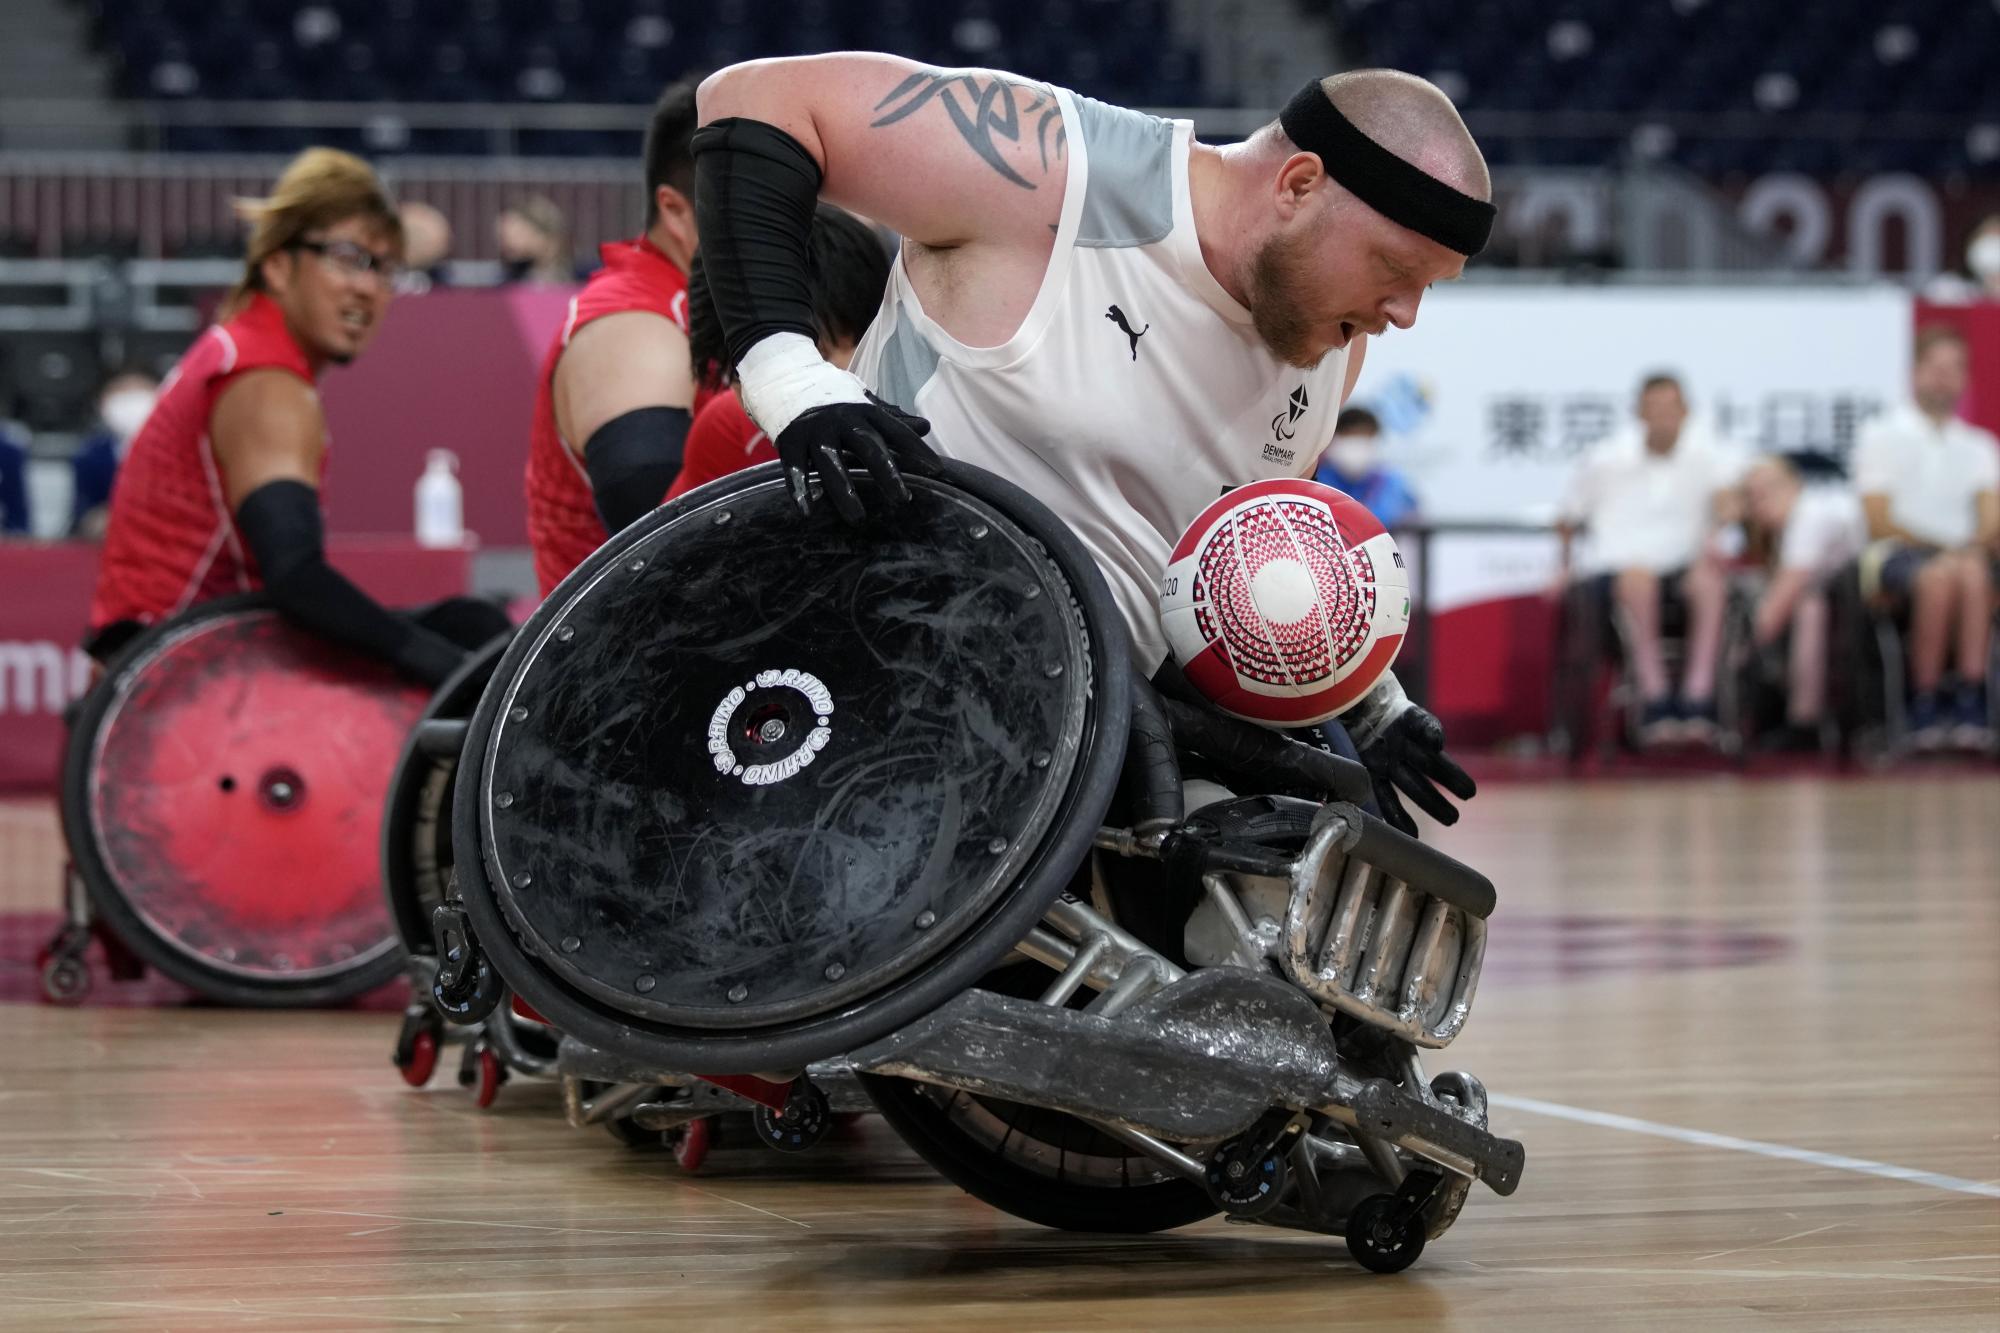 Mark Ingemann Peters, de Dinamarca, intenta controlar el balón durante un partido de la fase de grupos de Rugby en silla de ruedas en los Juegos Paralímpicos de Tokio 2020, el jueves 26 de agosto de 2021, en Tokio, Japón. (Foto AP / Shuji Kajiyama)